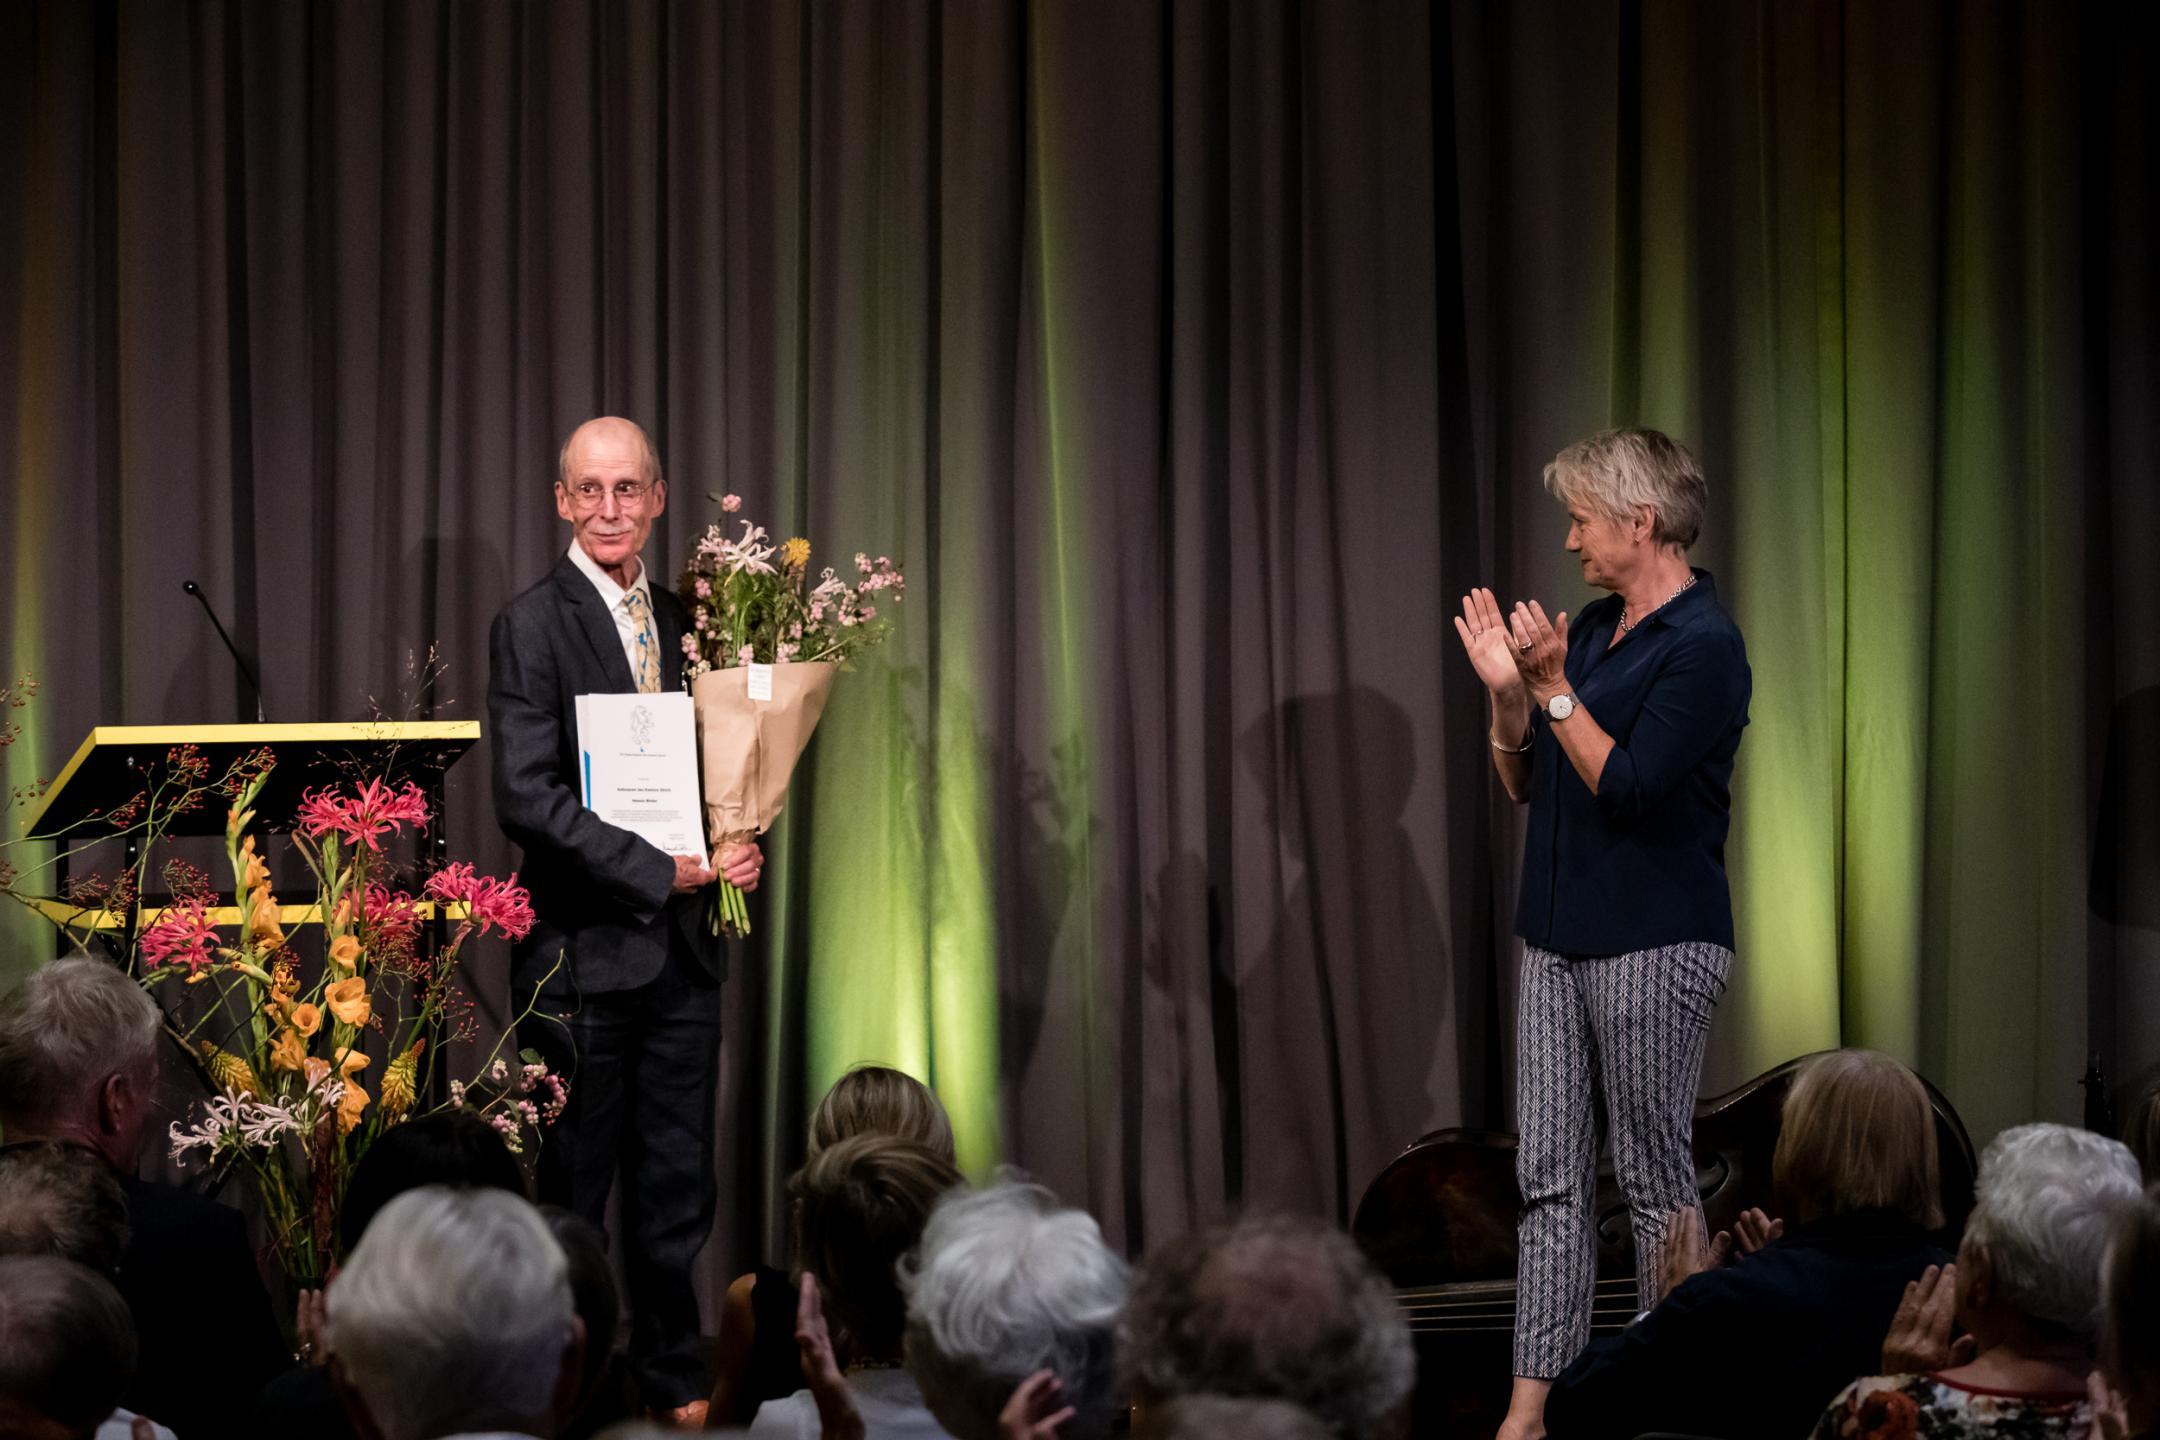 Hannes Binder mit Urkunde und Blumenstrauss, gerührt und strahlend, Jacqueline Fehr klatschend daneben